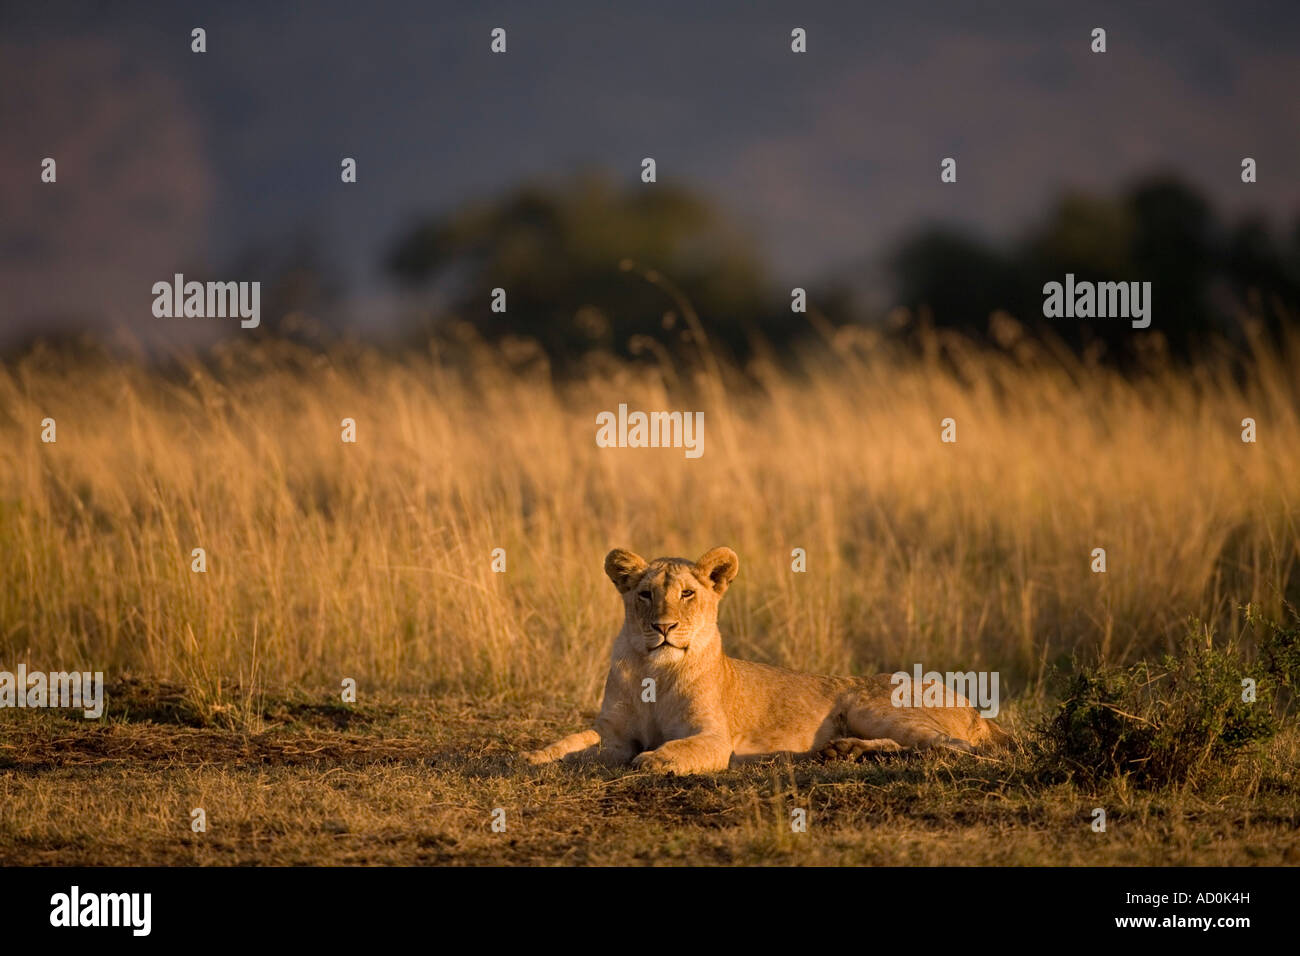 Africa Kenia Masai Mara Game Reserve Leonessa Panthera leo in appoggio sulla savana in prime luci dell alba Foto Stock